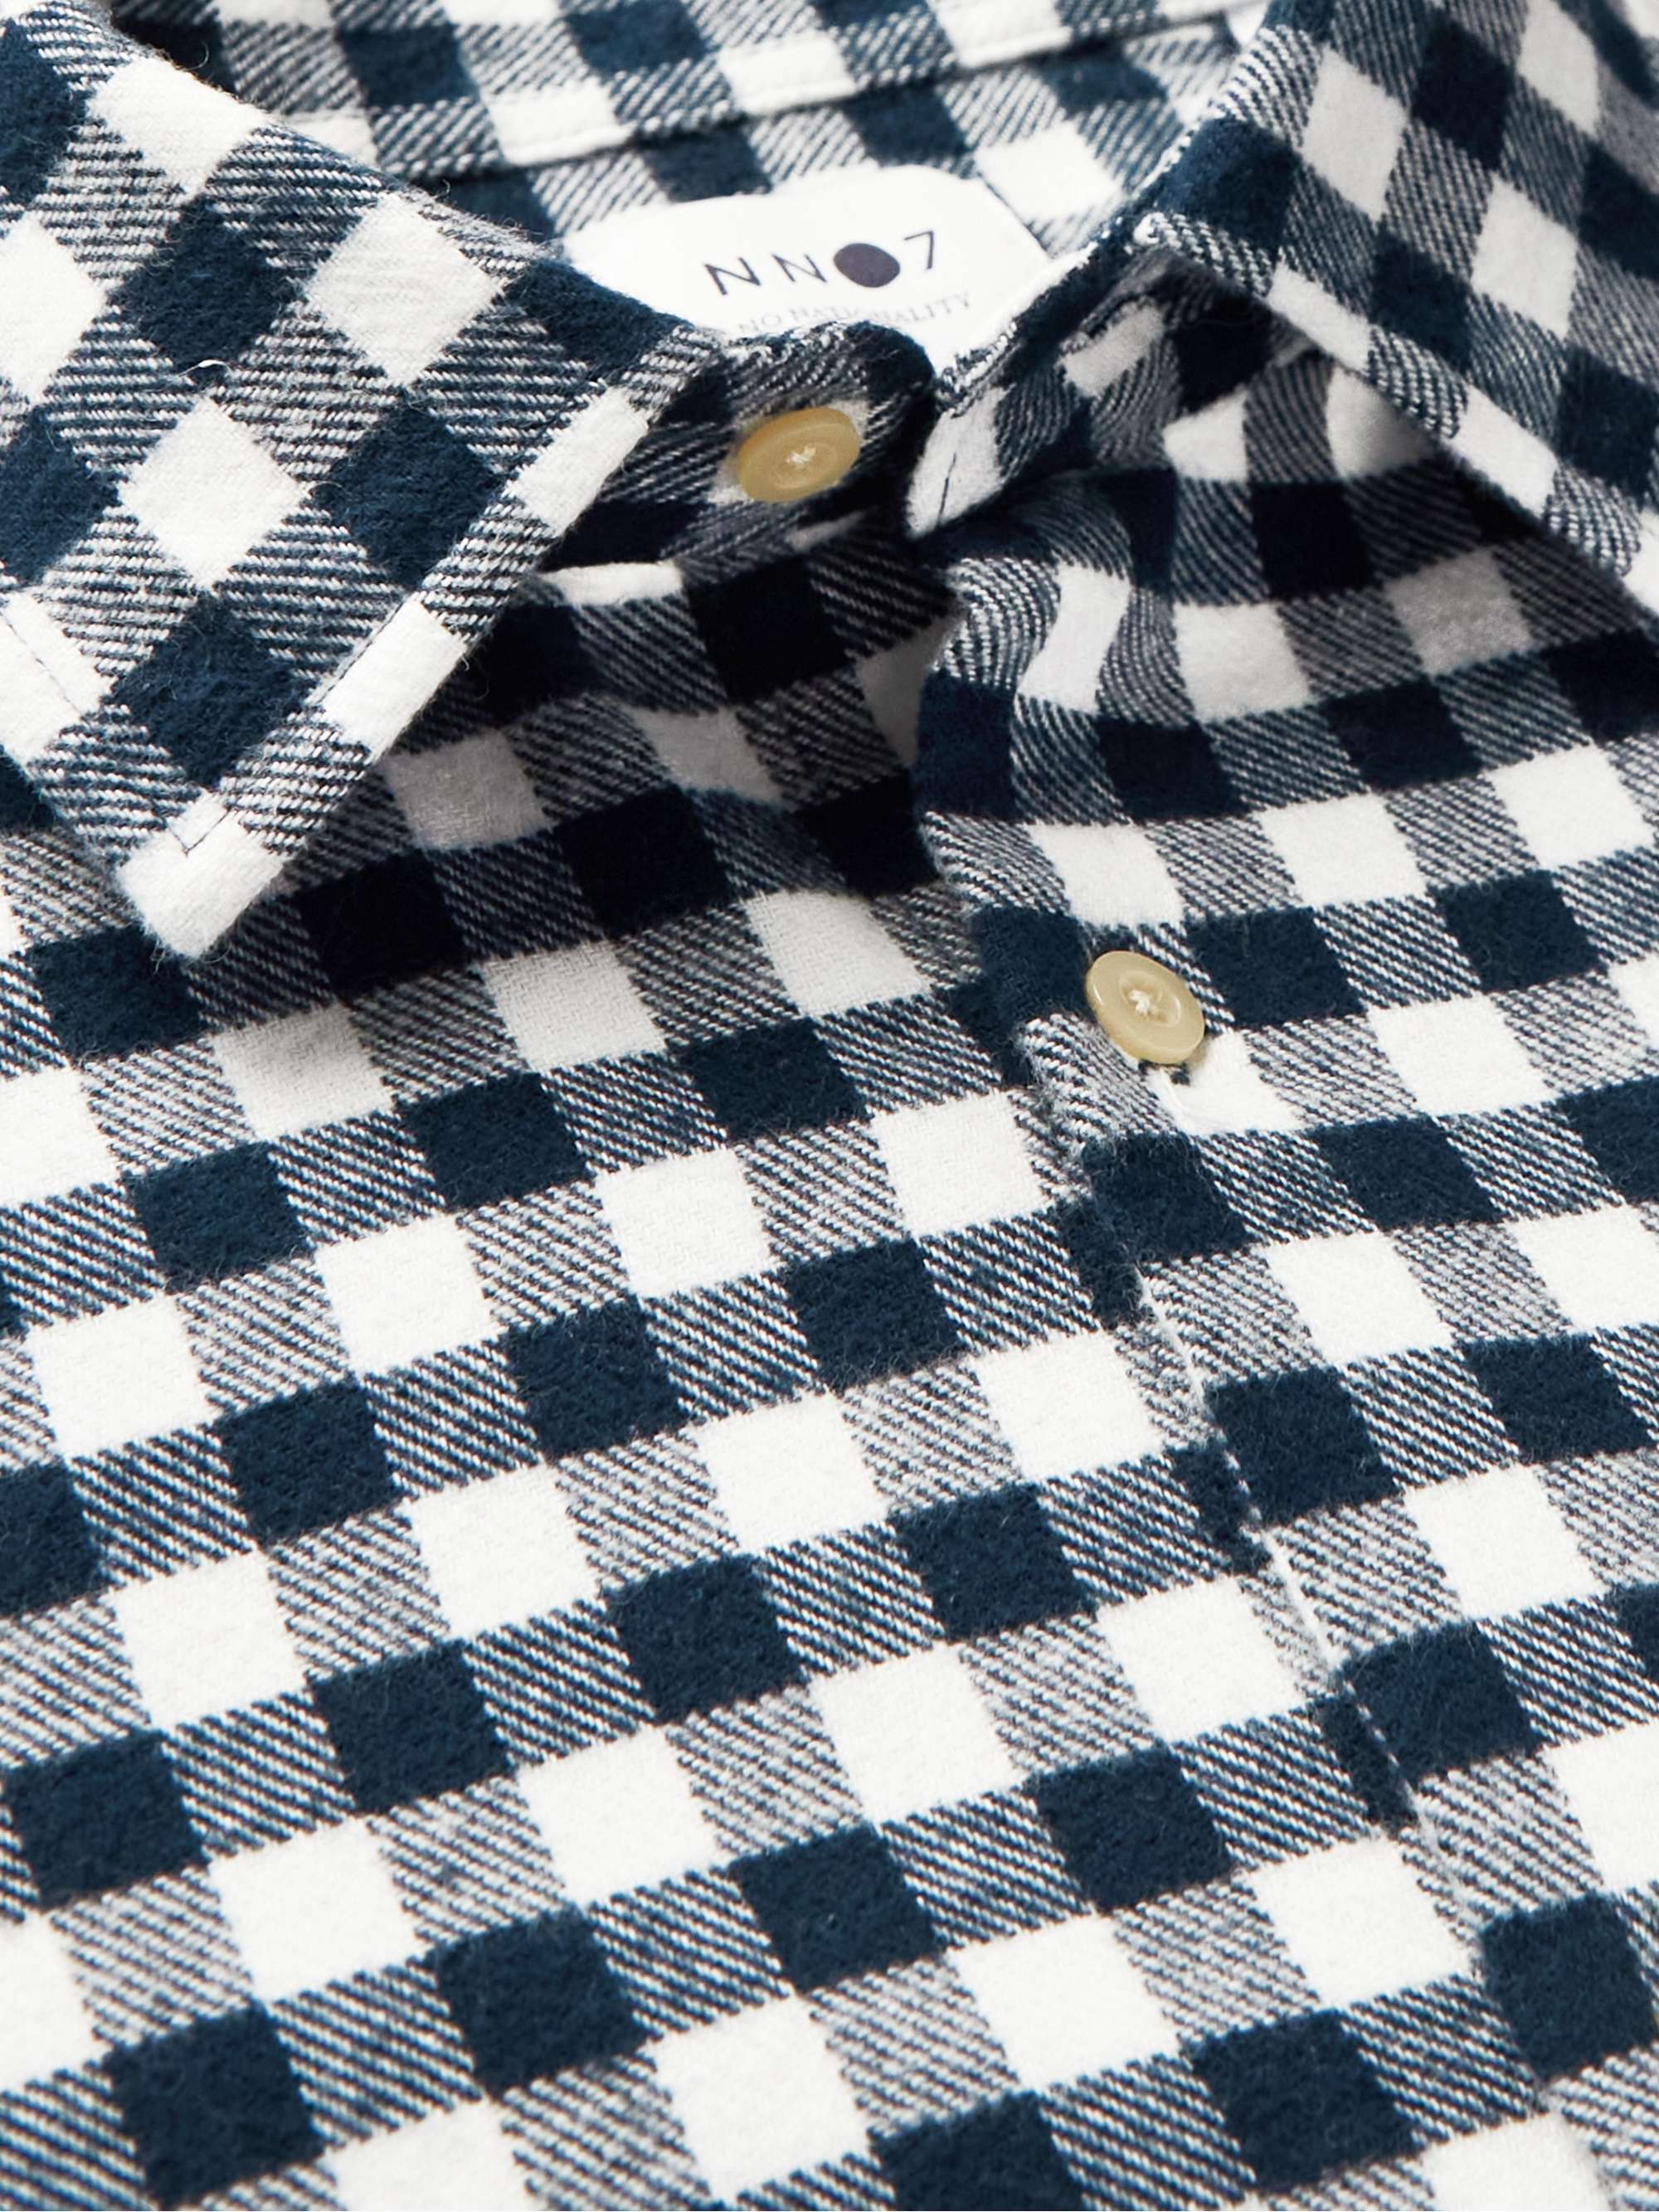 NN07 Errico Cotton-Flannel Shirt